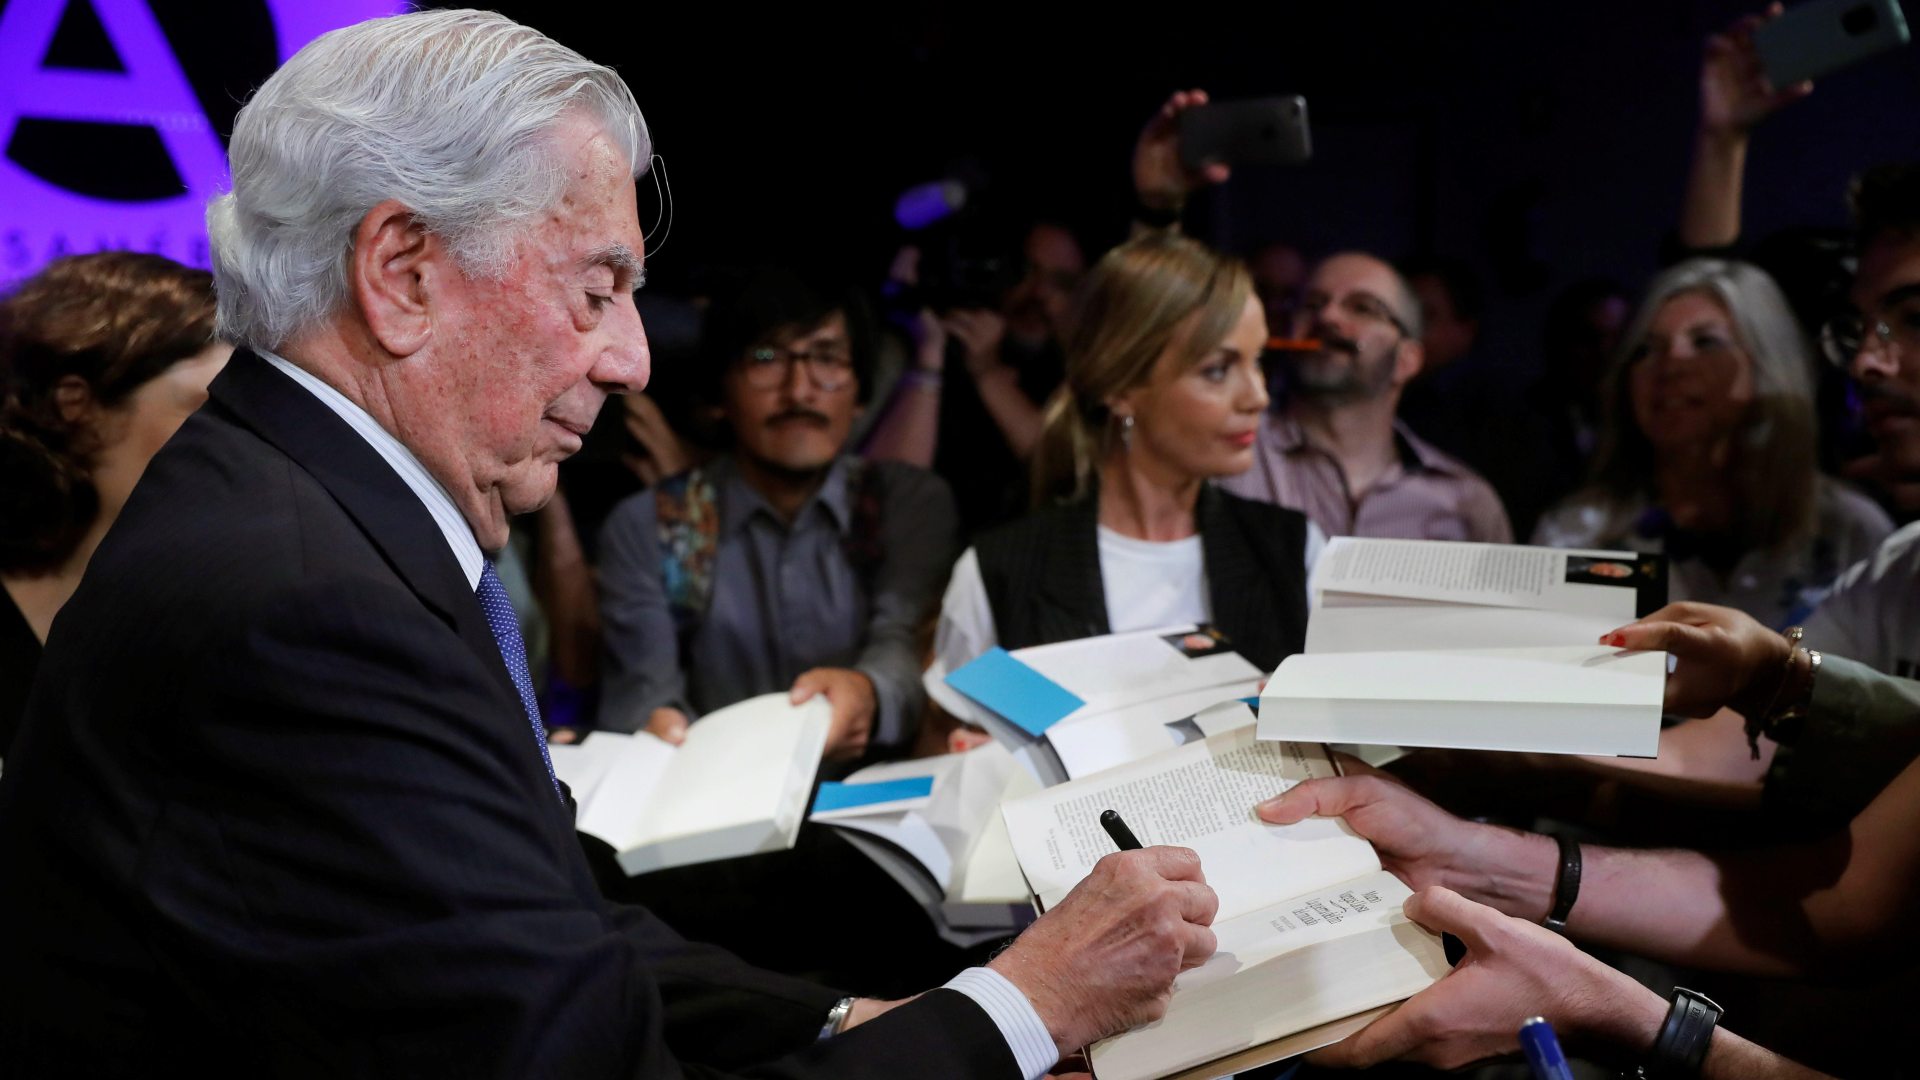 Mario Vargas Llosa retrata ''la cara más tenebrosa de América Latina" en 'Tiempos recios'